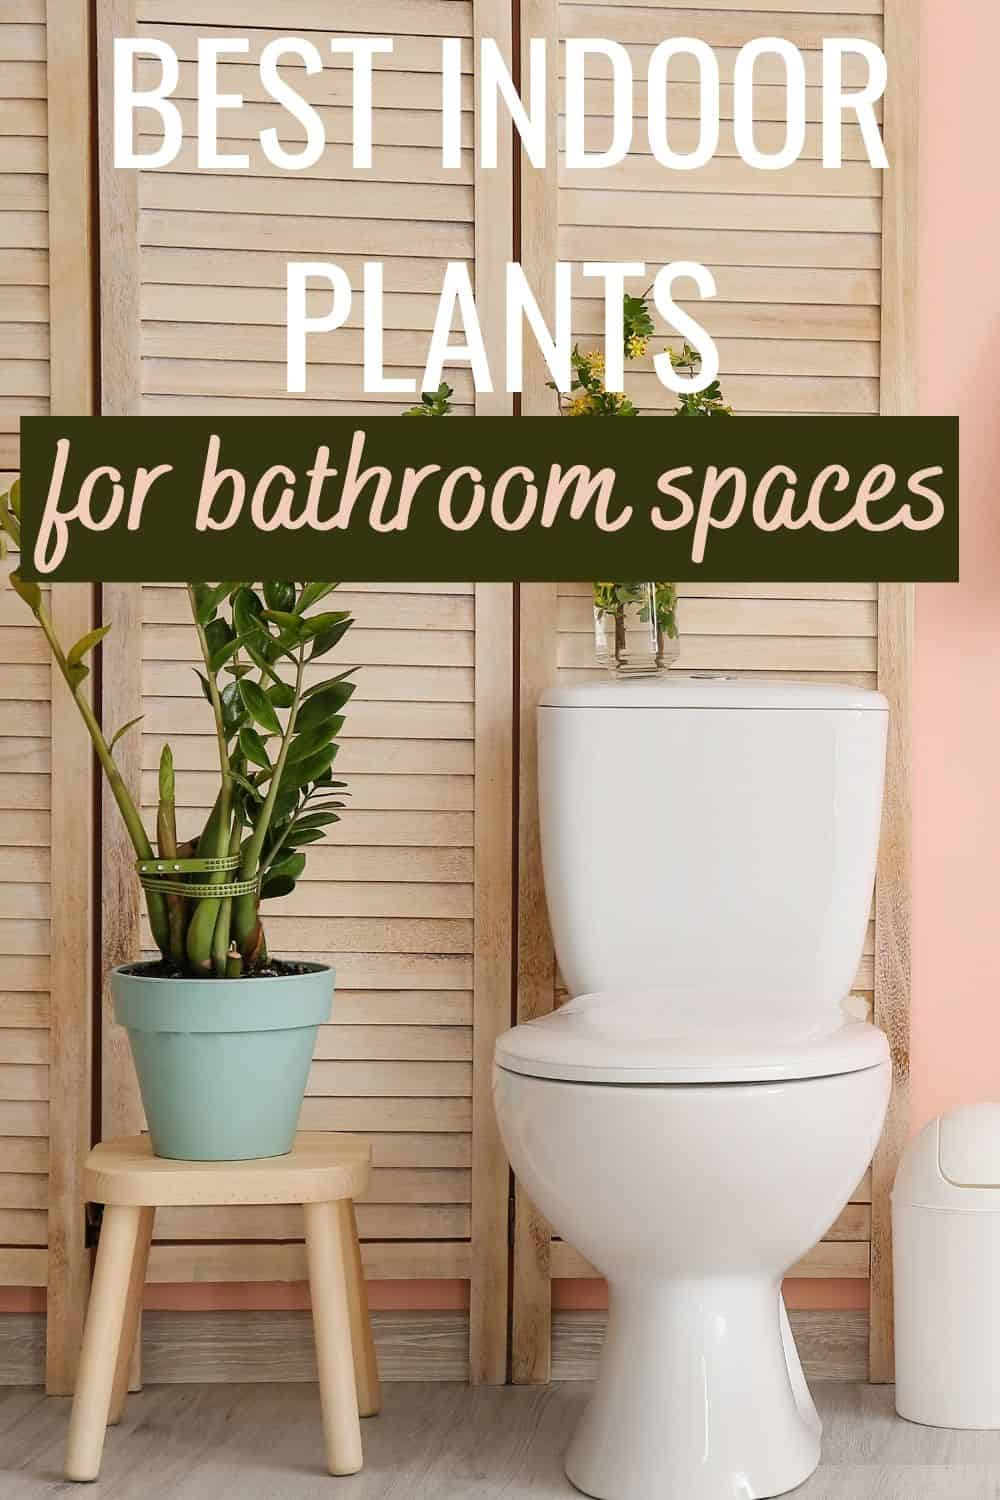 Best indoor plants for bathroom spaces